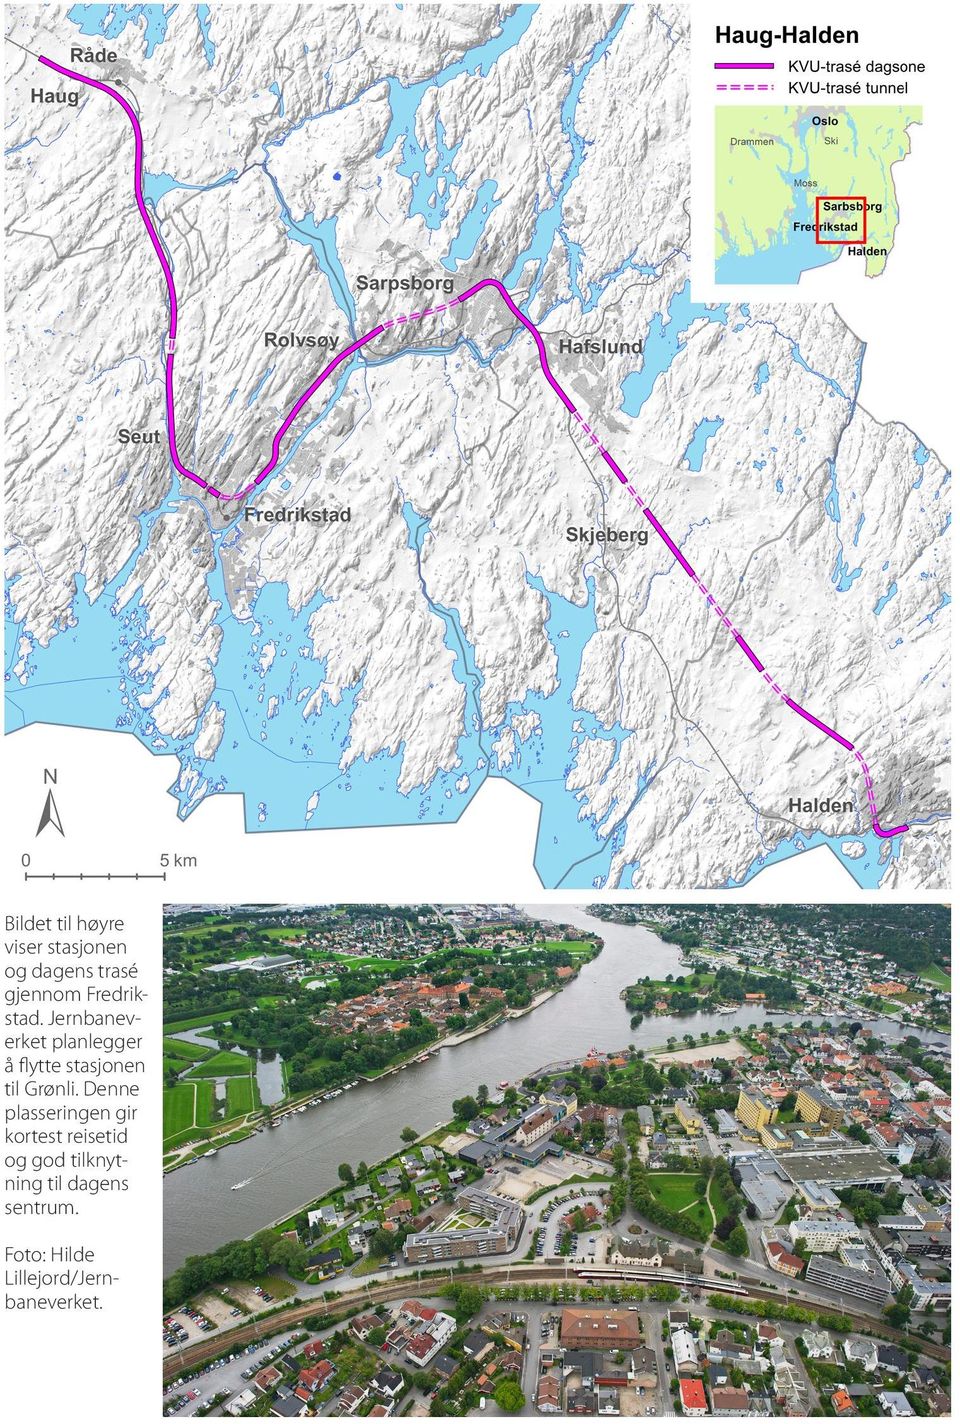 Jernbaneverket planlegger å flytte stasjonen til Grønli.